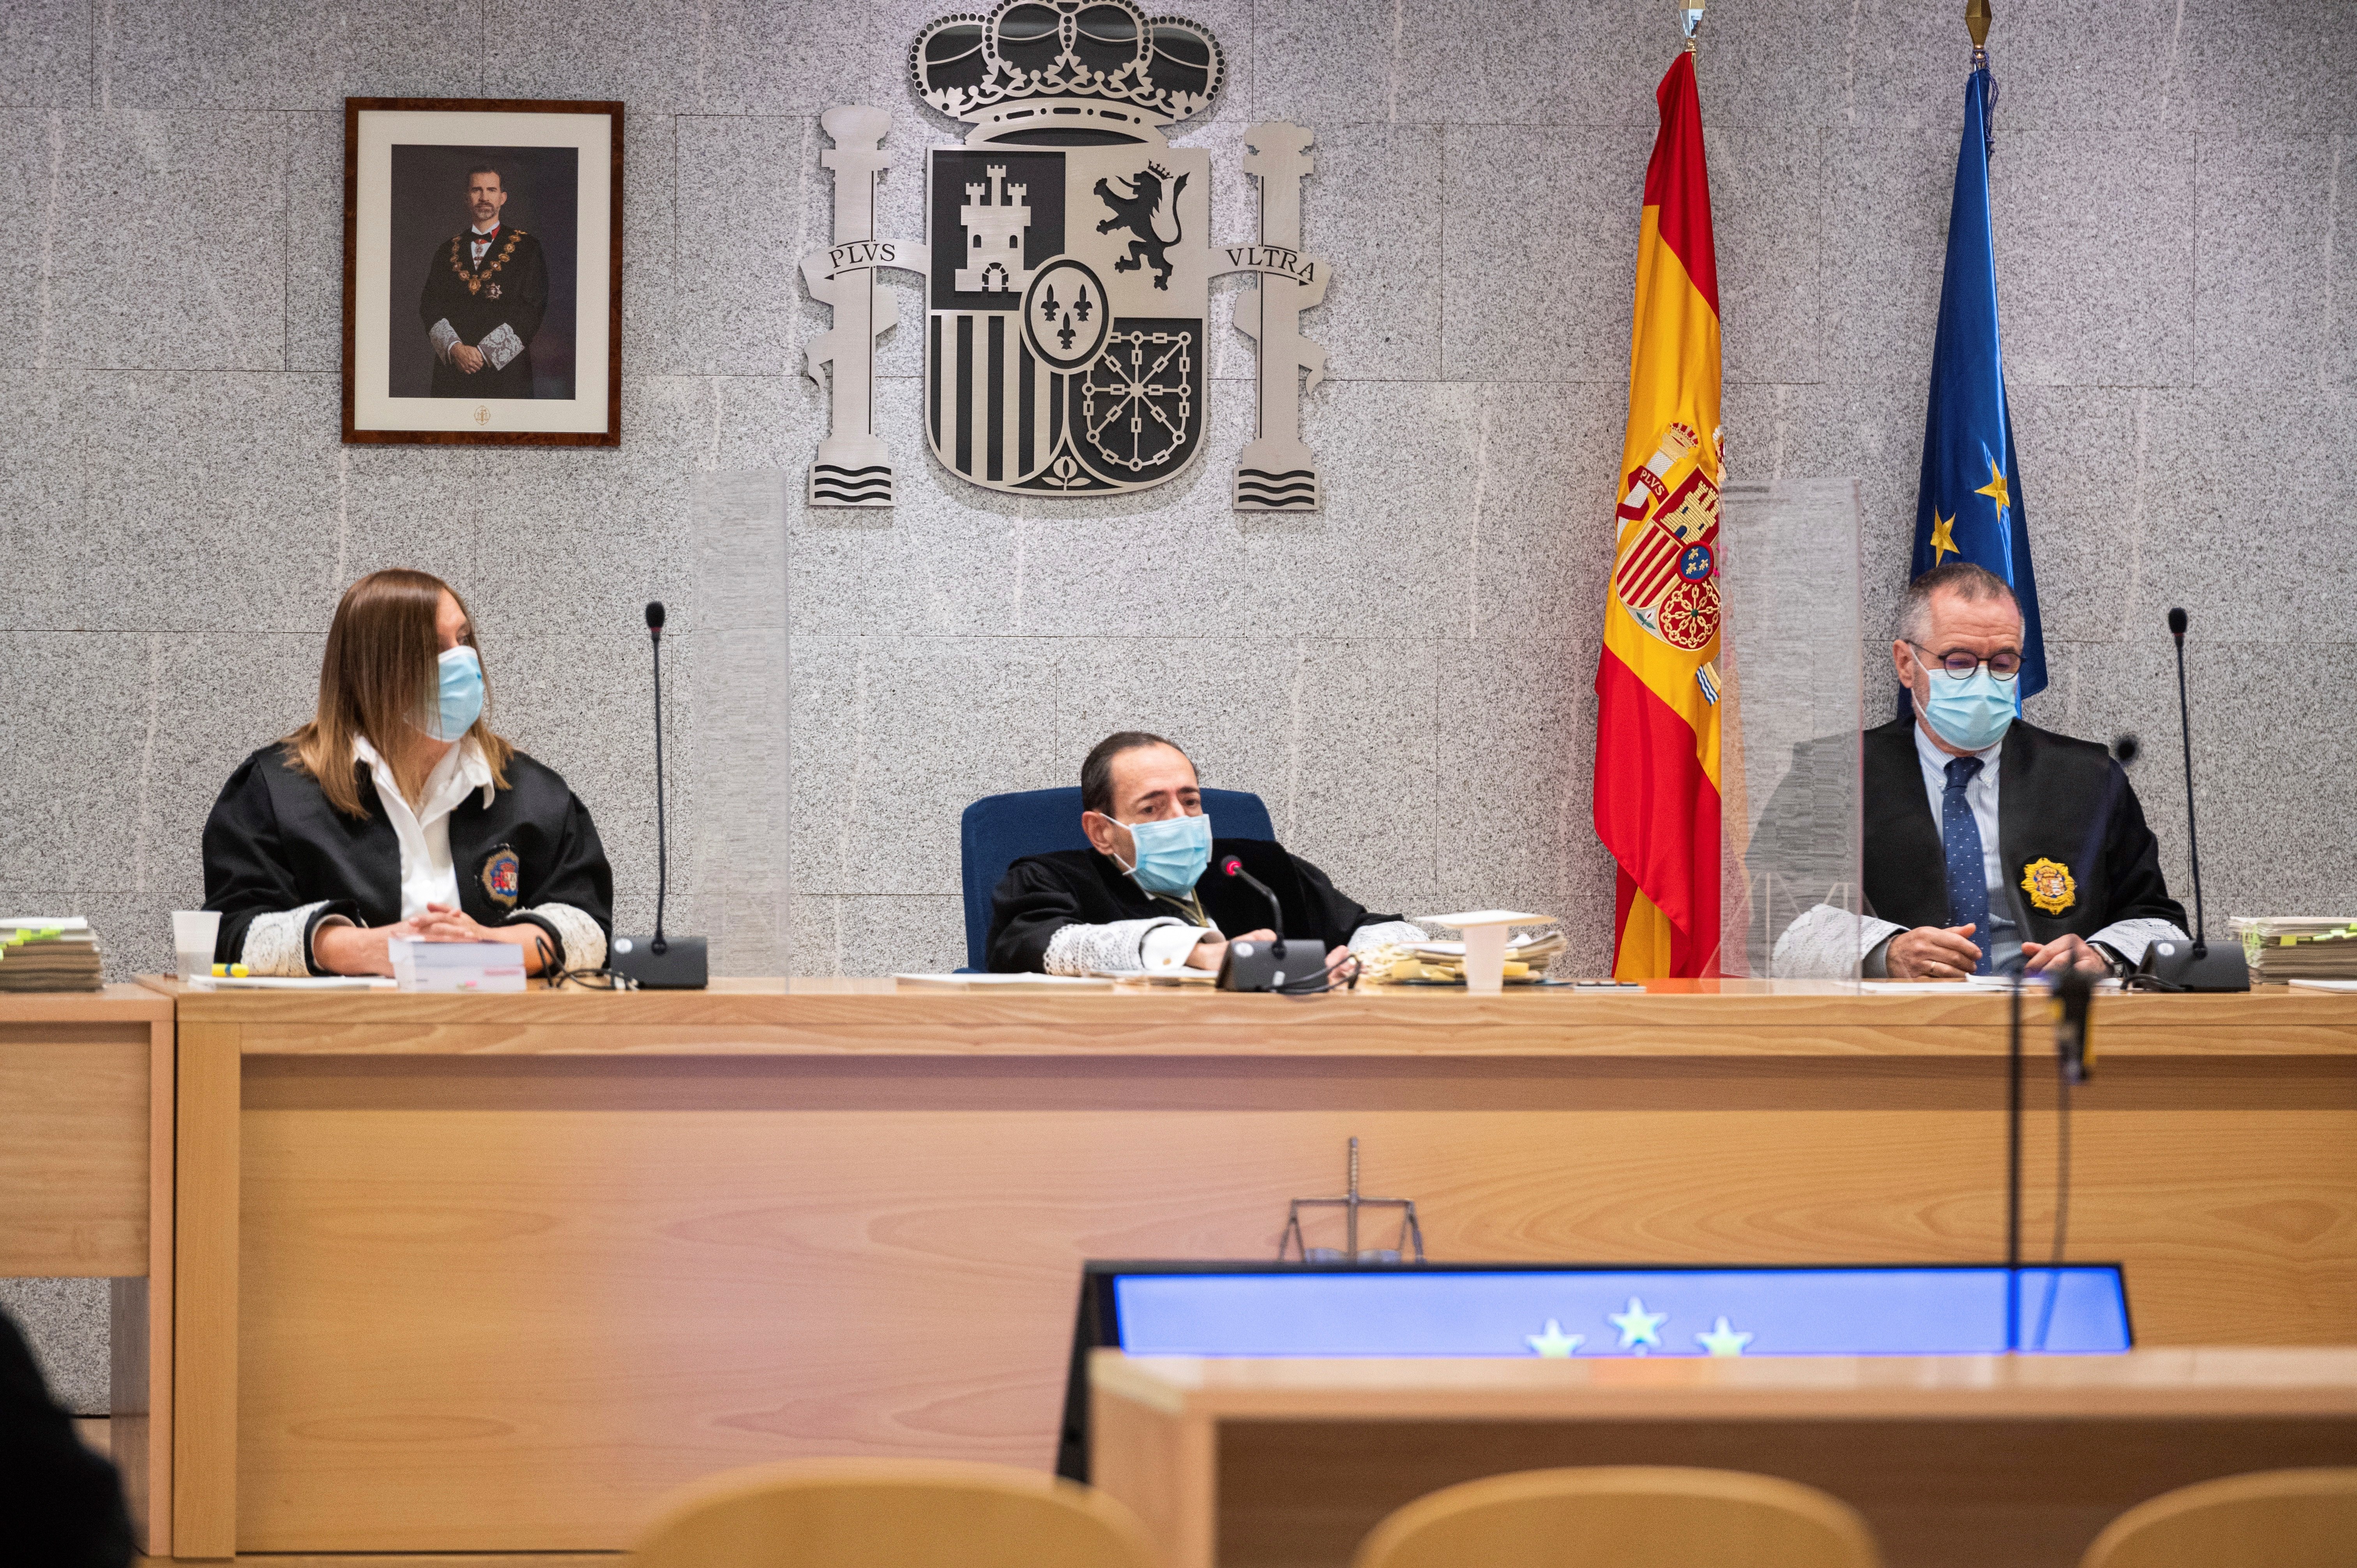 El Consell d'Advocacia Catalana carga contra el juez Guevara: "Inaceptable"